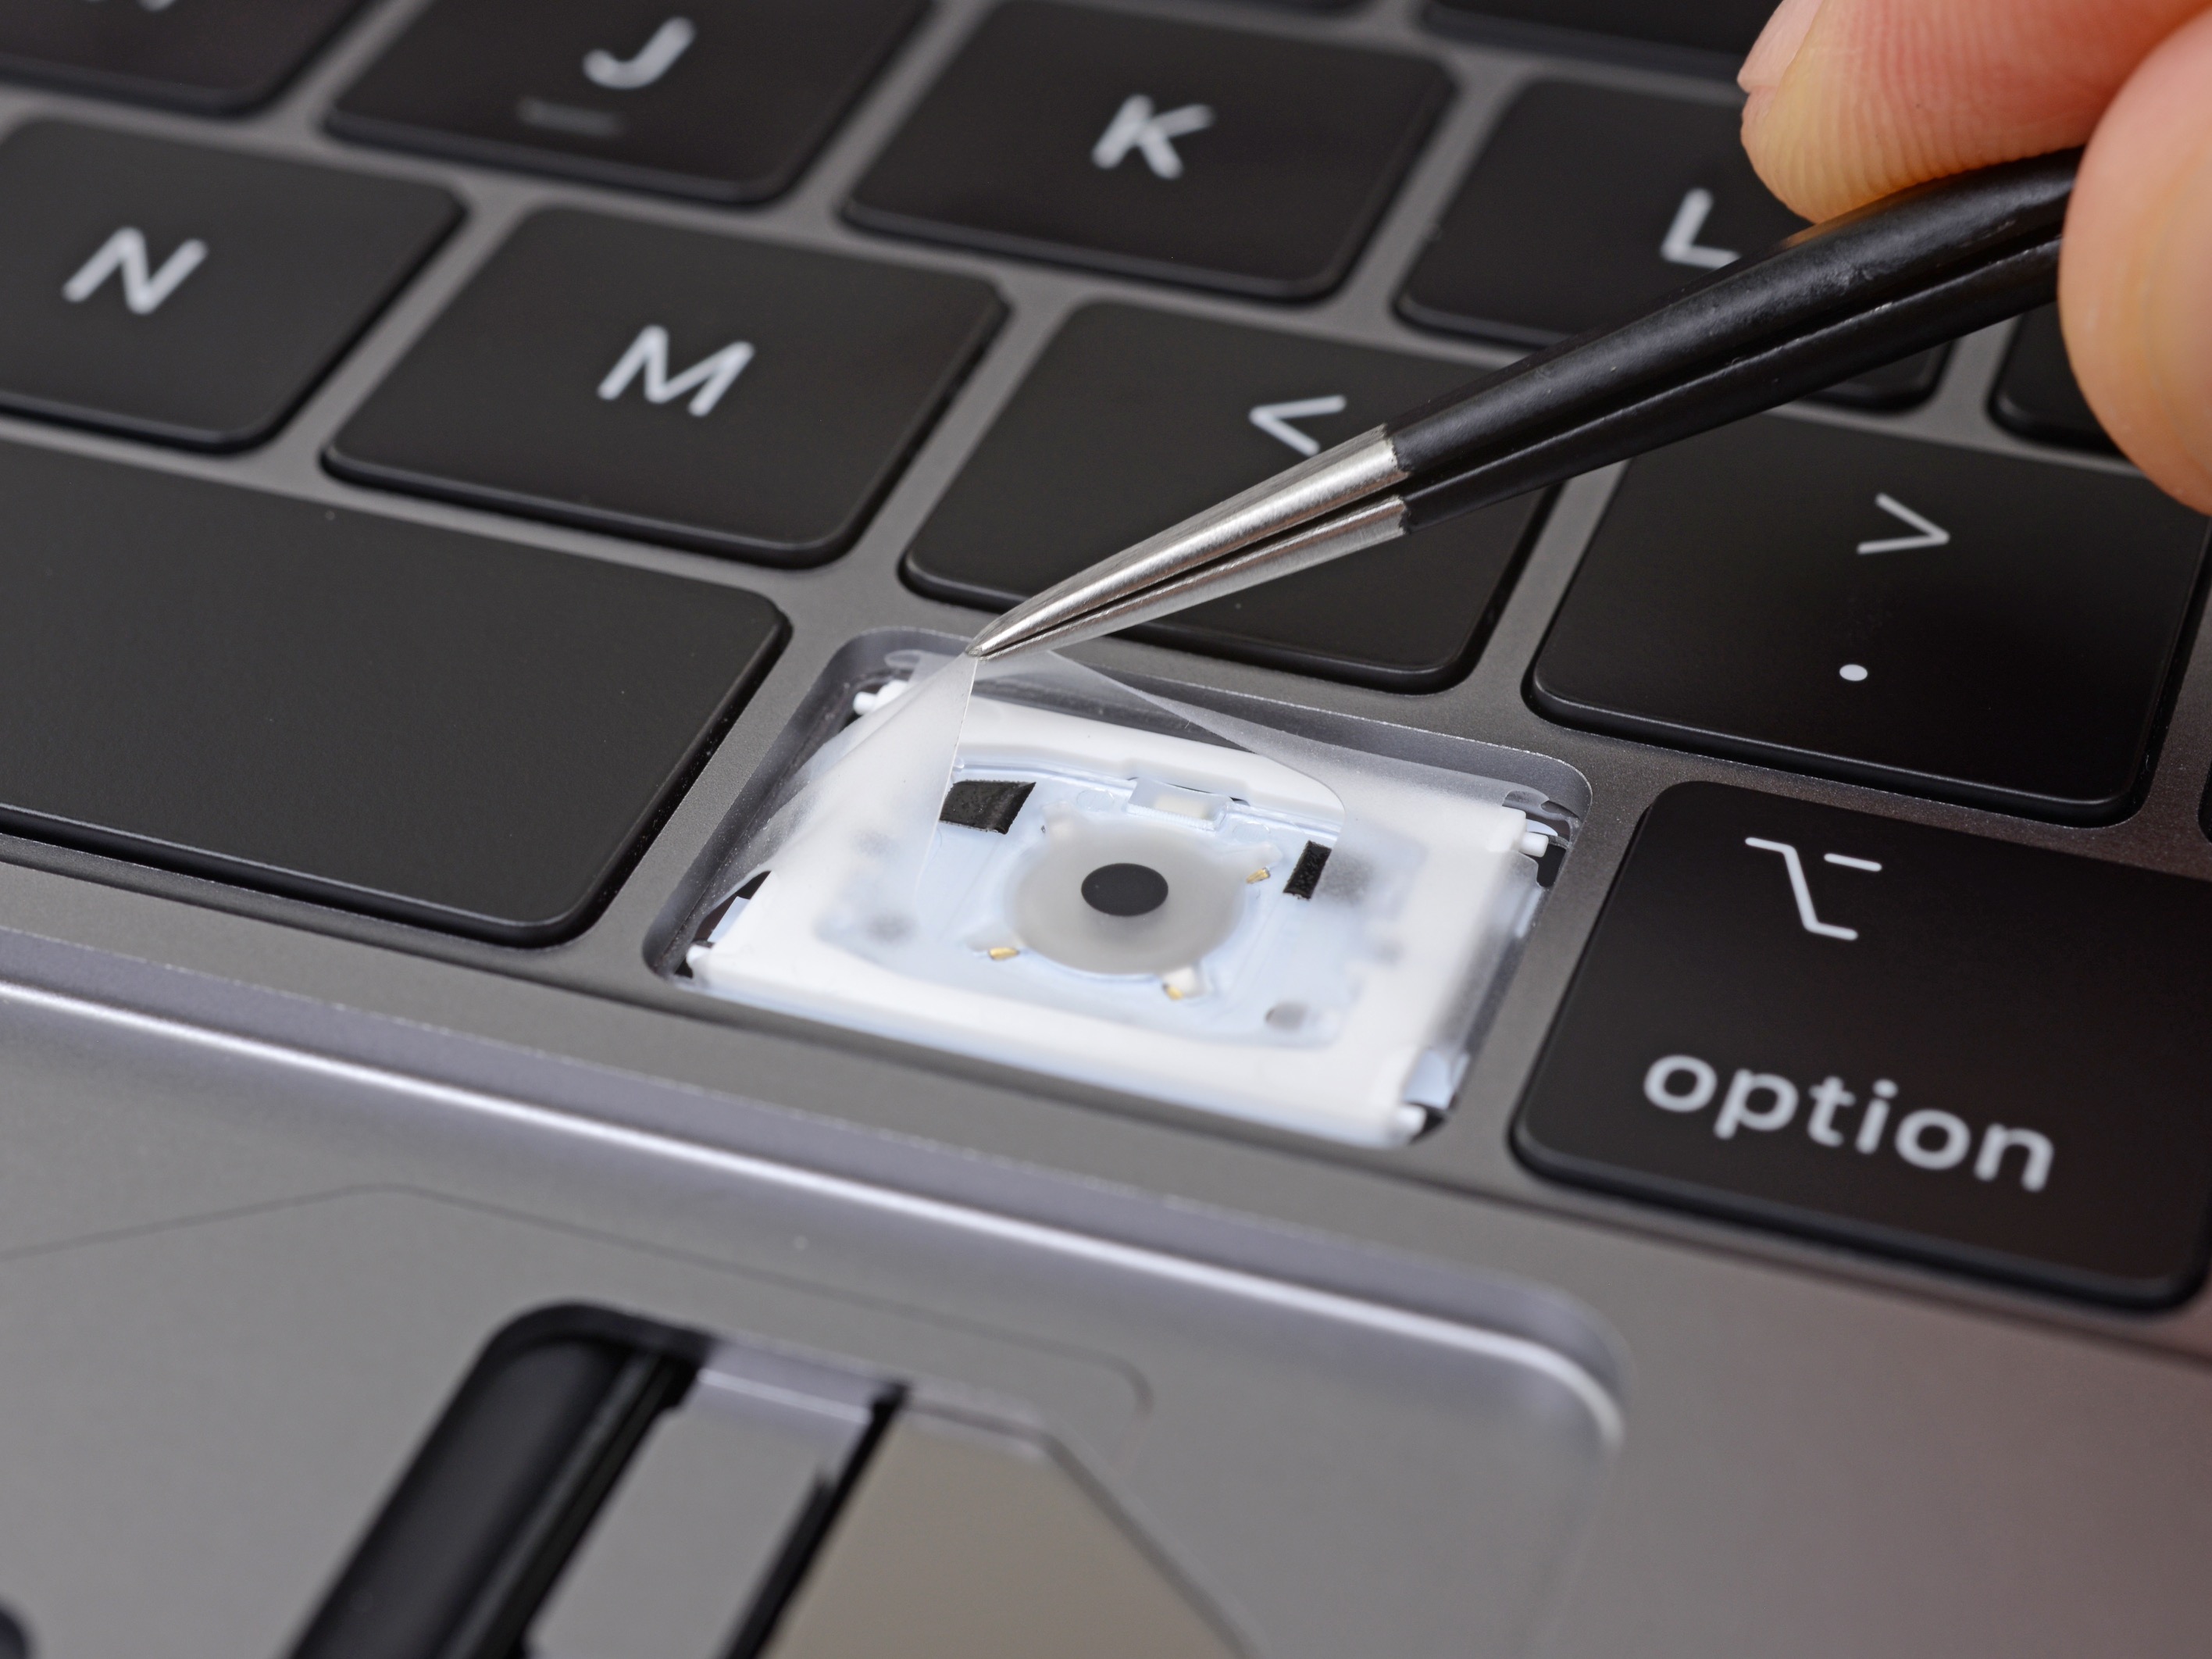 Đây là các tùy chọn sửa chữa và các bộ phận có sẵn trên MacBook Pro 2018